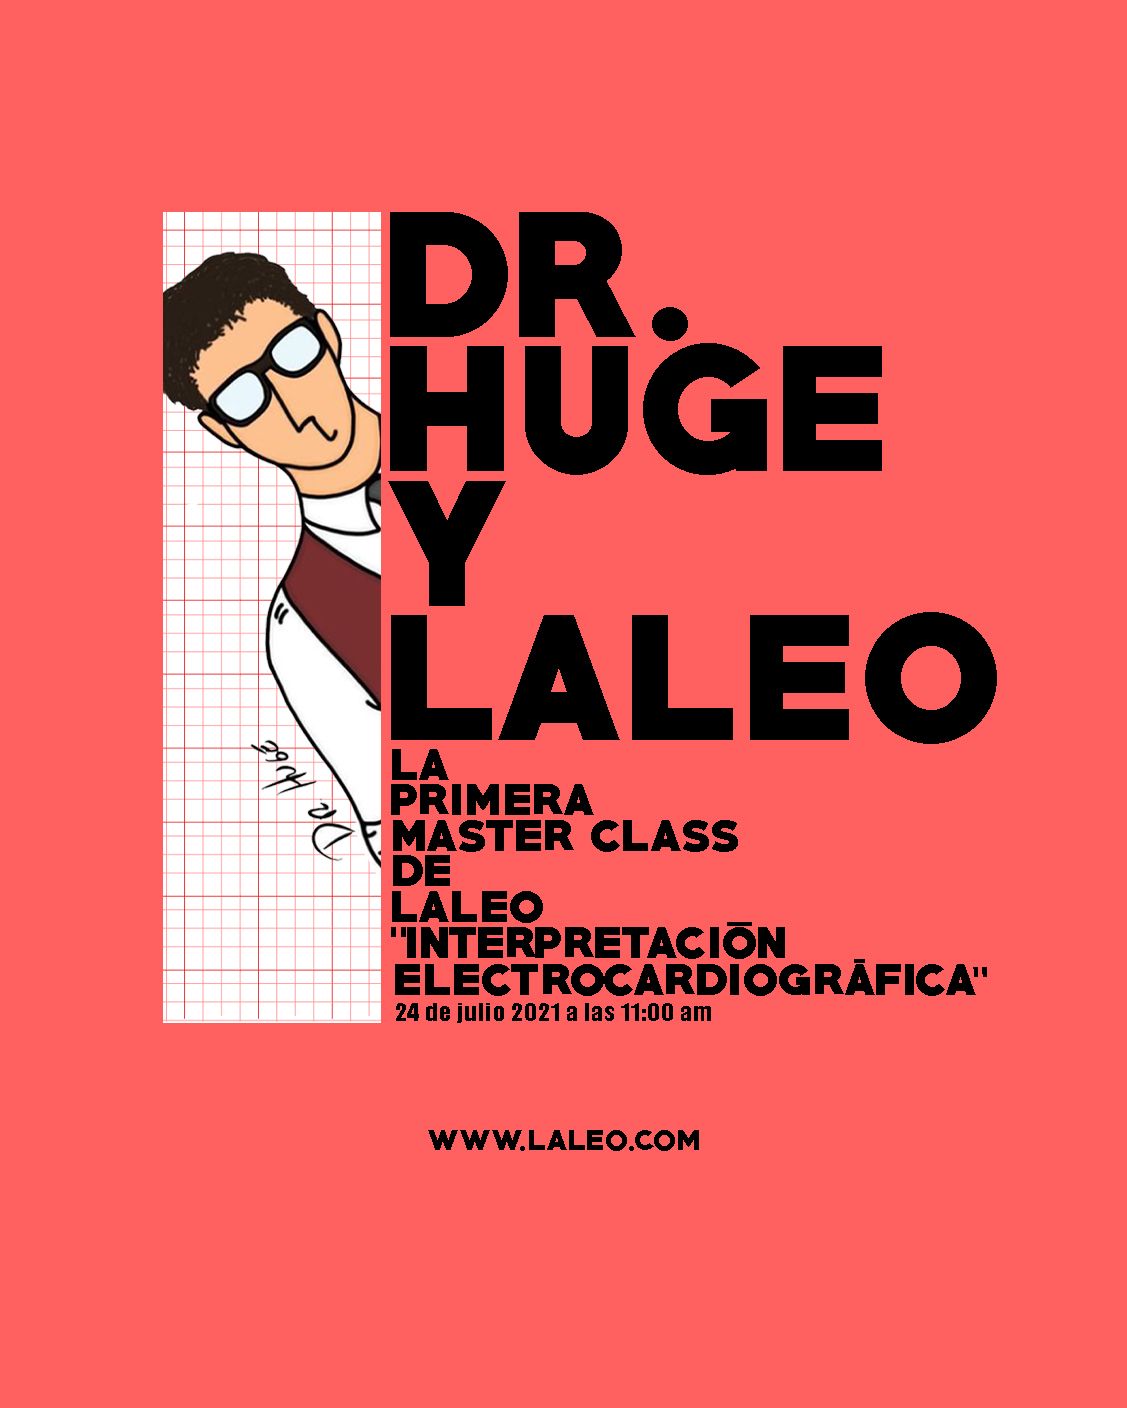 DR HUGE x LALEO